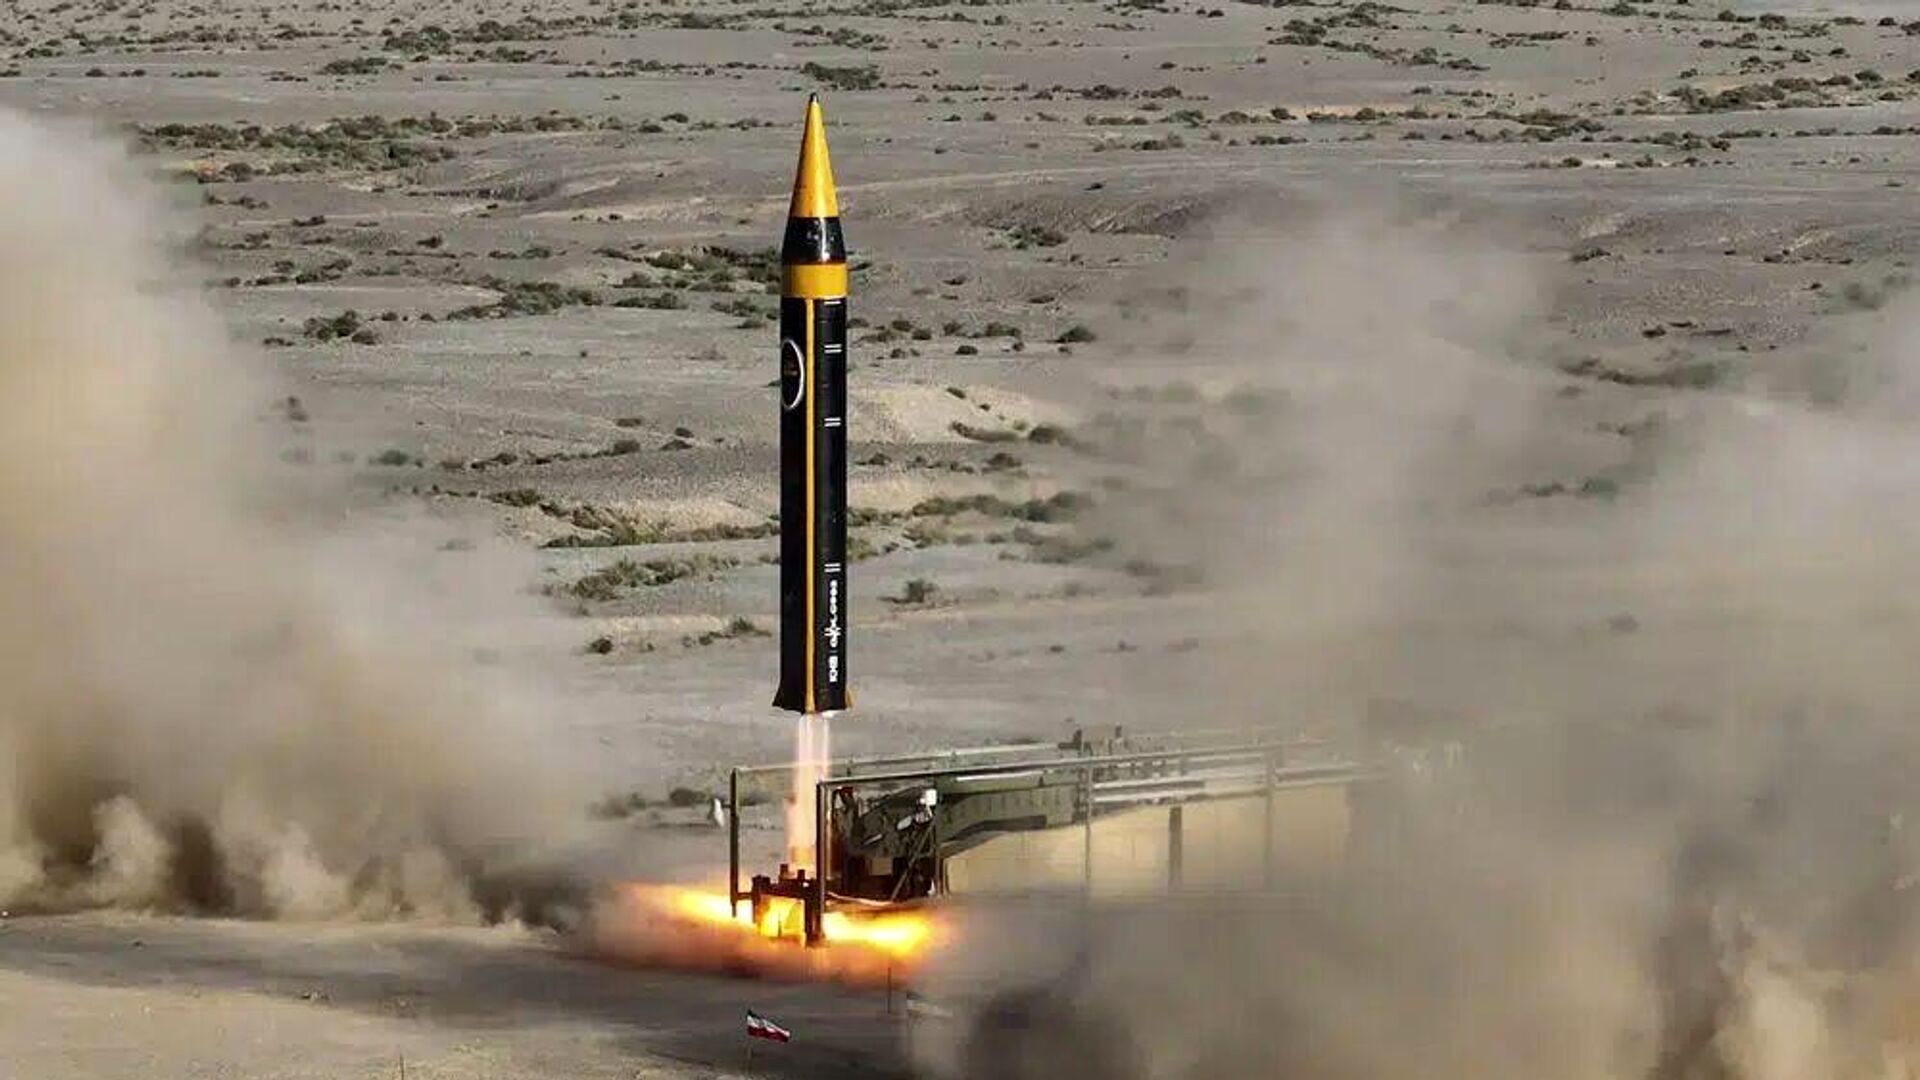 ویدئویی از لحظه شلیک موشک ایرانی به اسرائیل